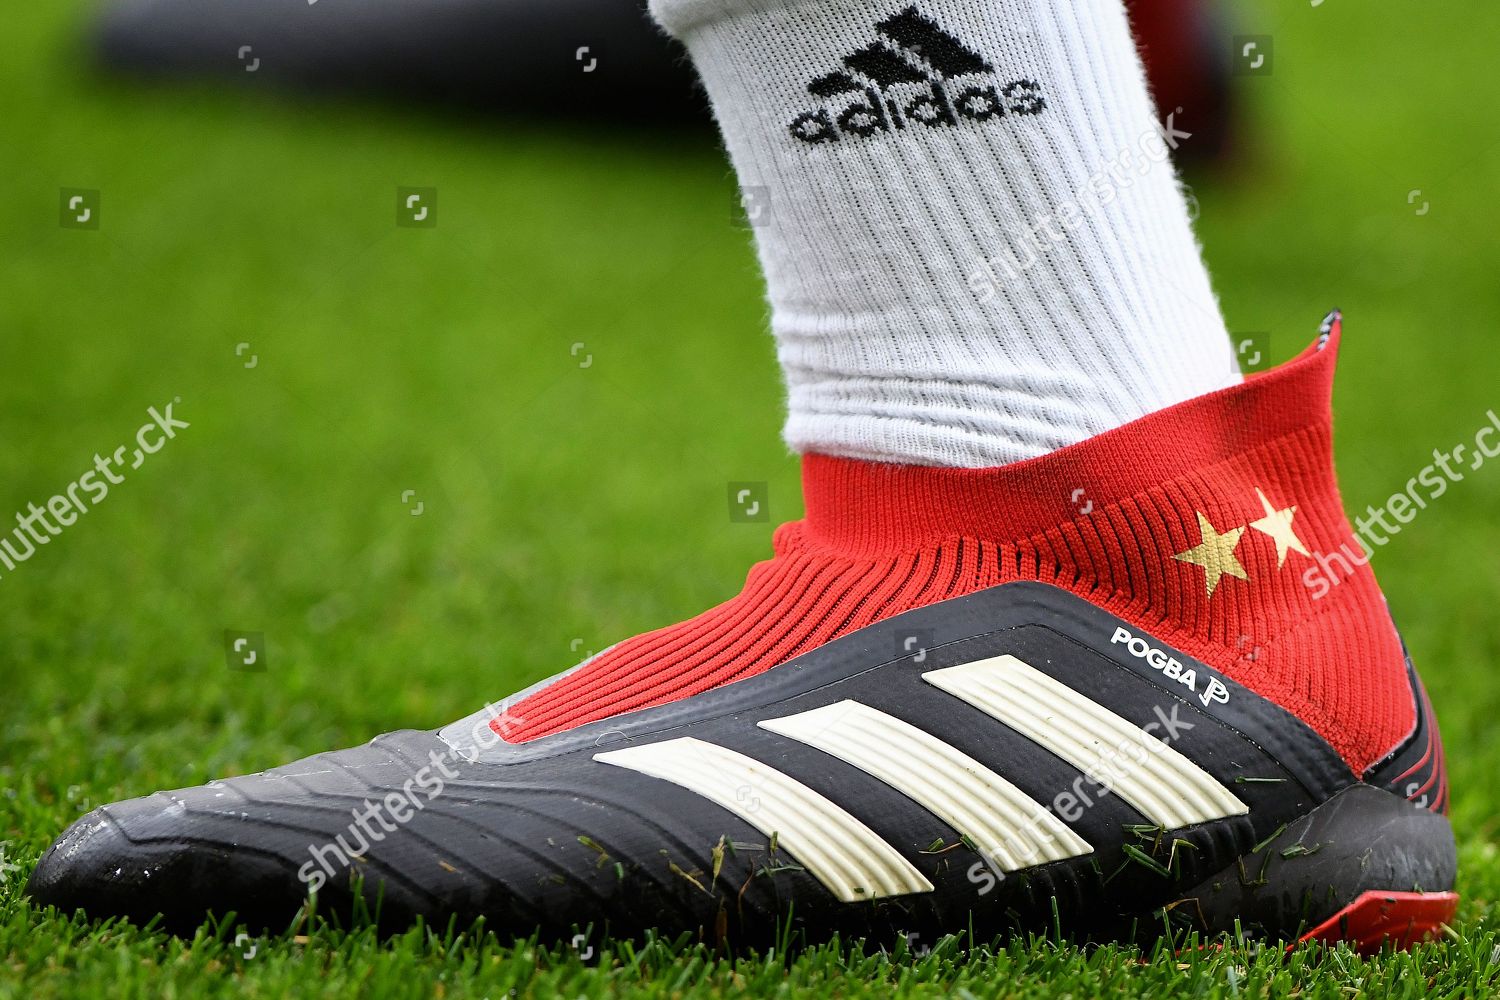 Adidas Boots Paul Manchester Foto de stock de editorial - Imagen de | Shutterstock